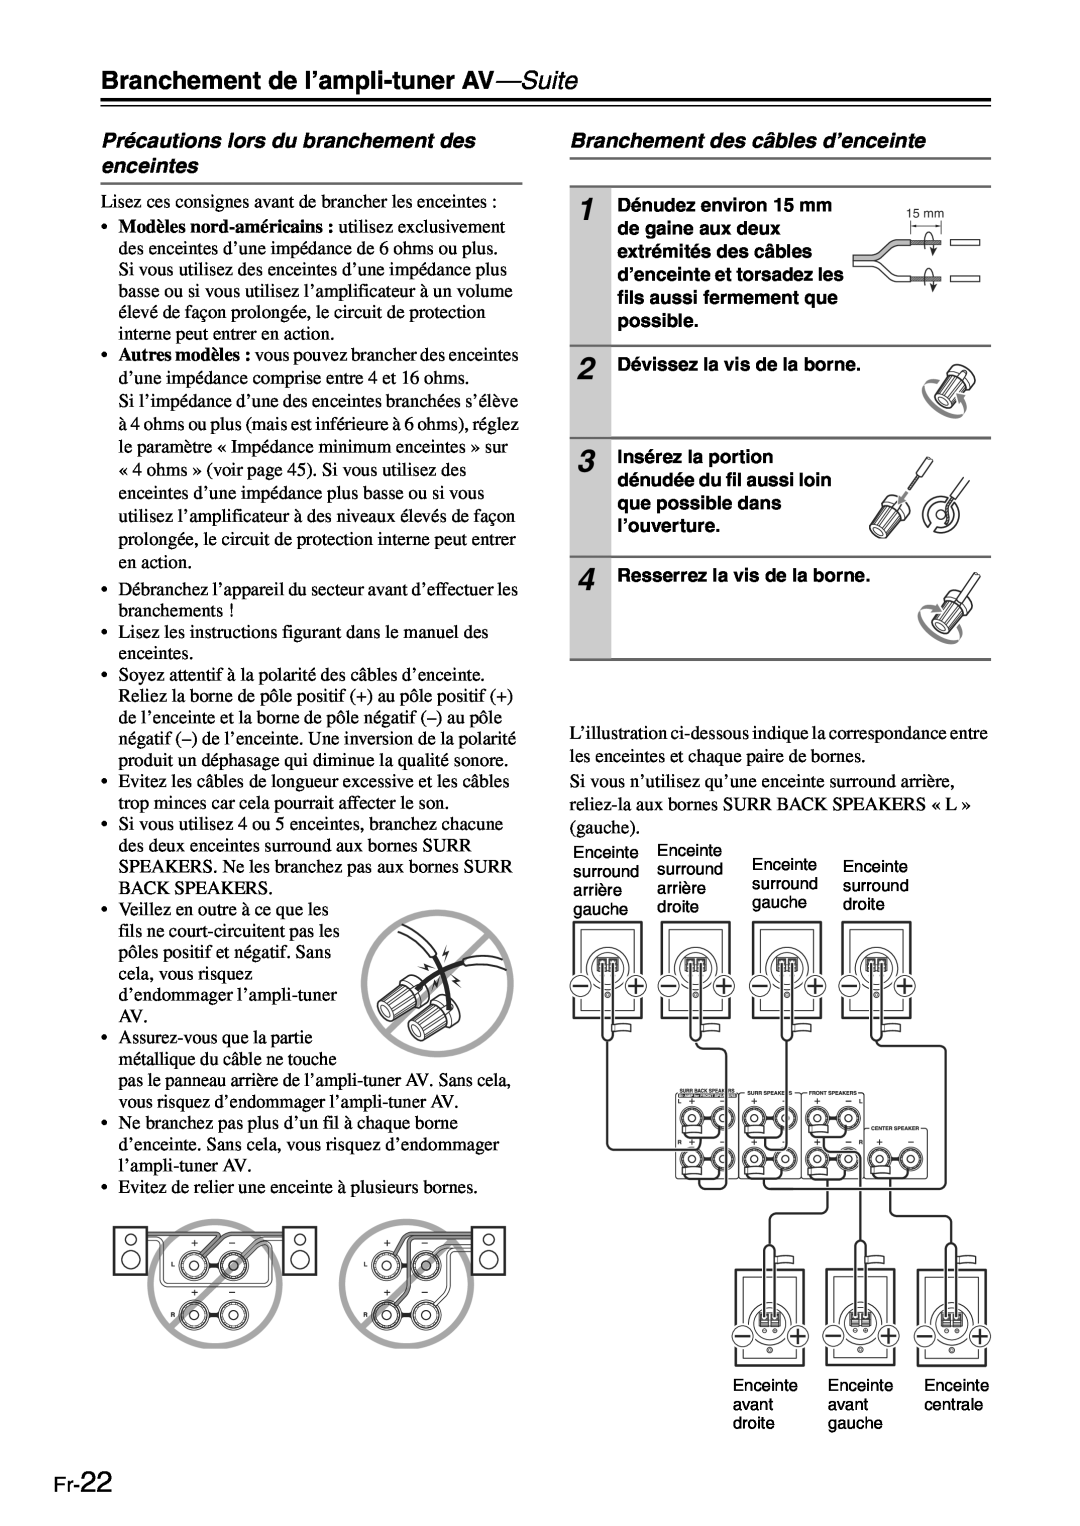 Onkyo TX-SR705 manual Précautions lors du branchement des enceintes, Branchement des câbles d’enceinte, Fr-22 